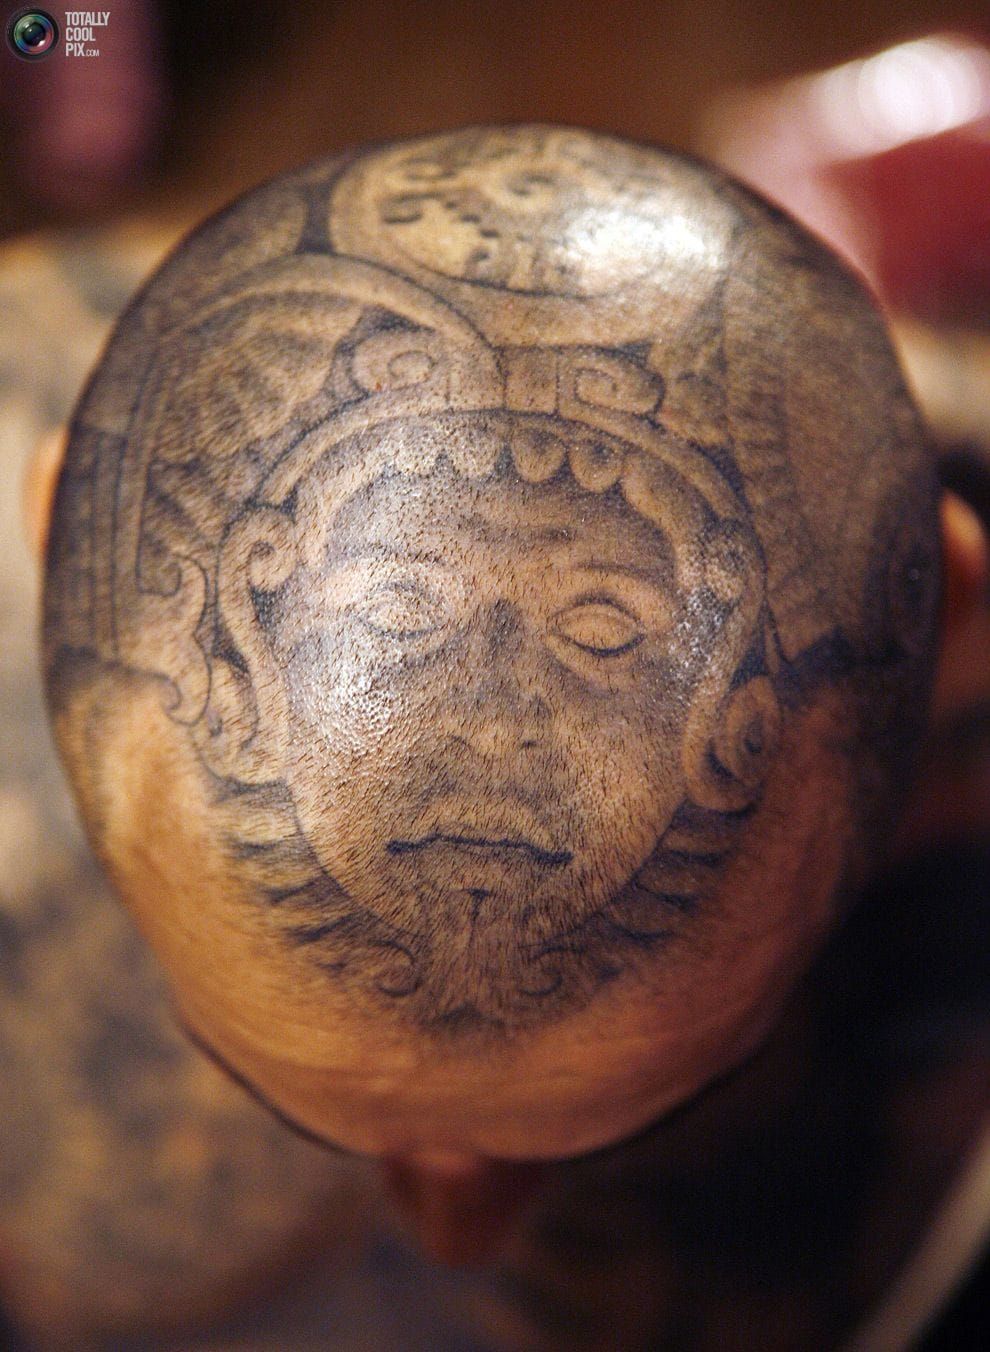 Mayan scalp piece.